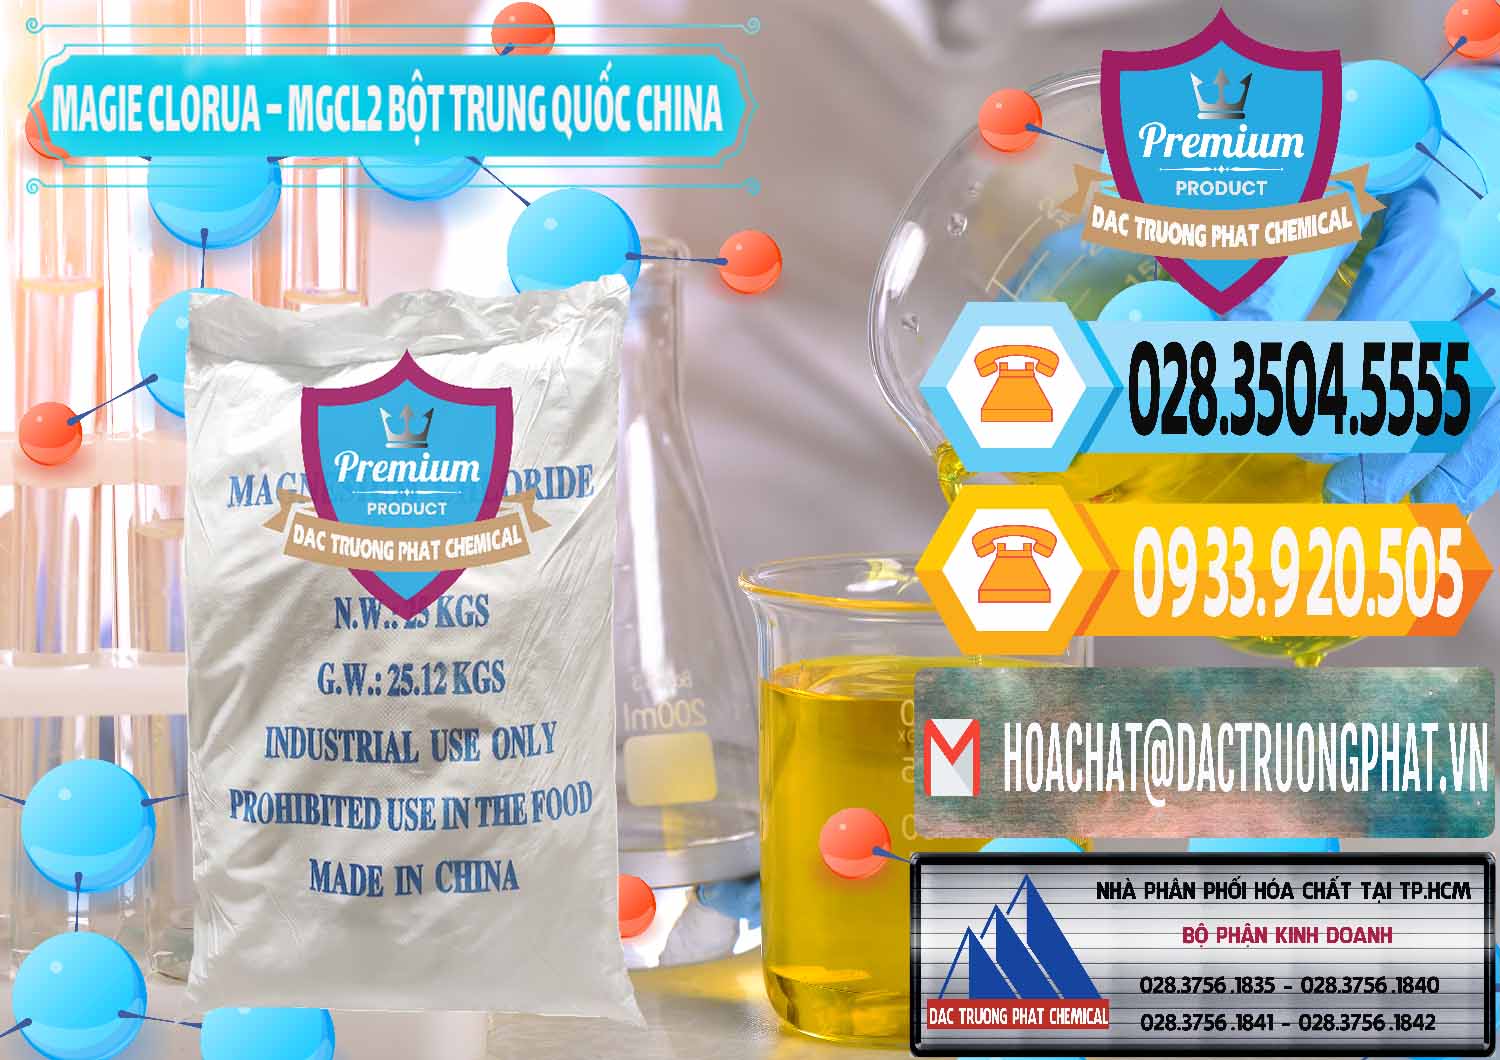 Nơi bán & phân phối Magie Clorua – MGCL2 96% Dạng Bột Bao Chữ Xanh Trung Quốc China - 0207 - Đơn vị bán ( phân phối ) hóa chất tại TP.HCM - hoachattayrua.net